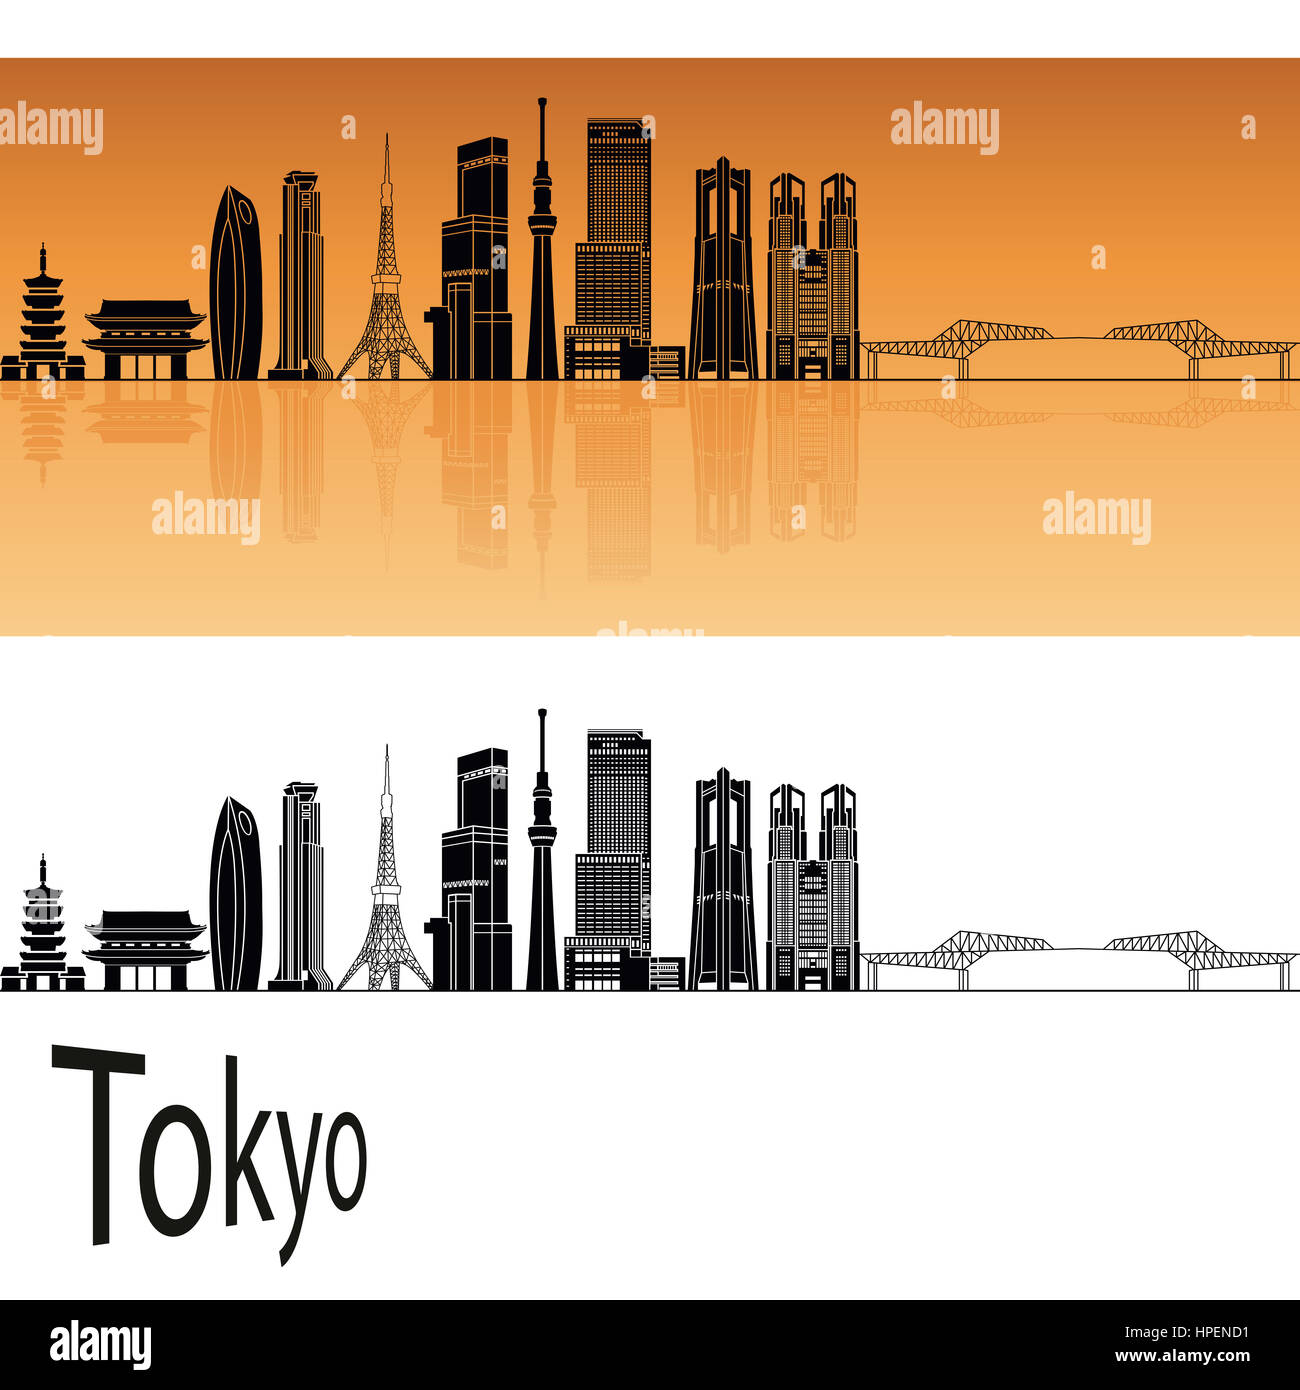 Tokyo V3 skyline in orange background in editable vector file Stock Photo